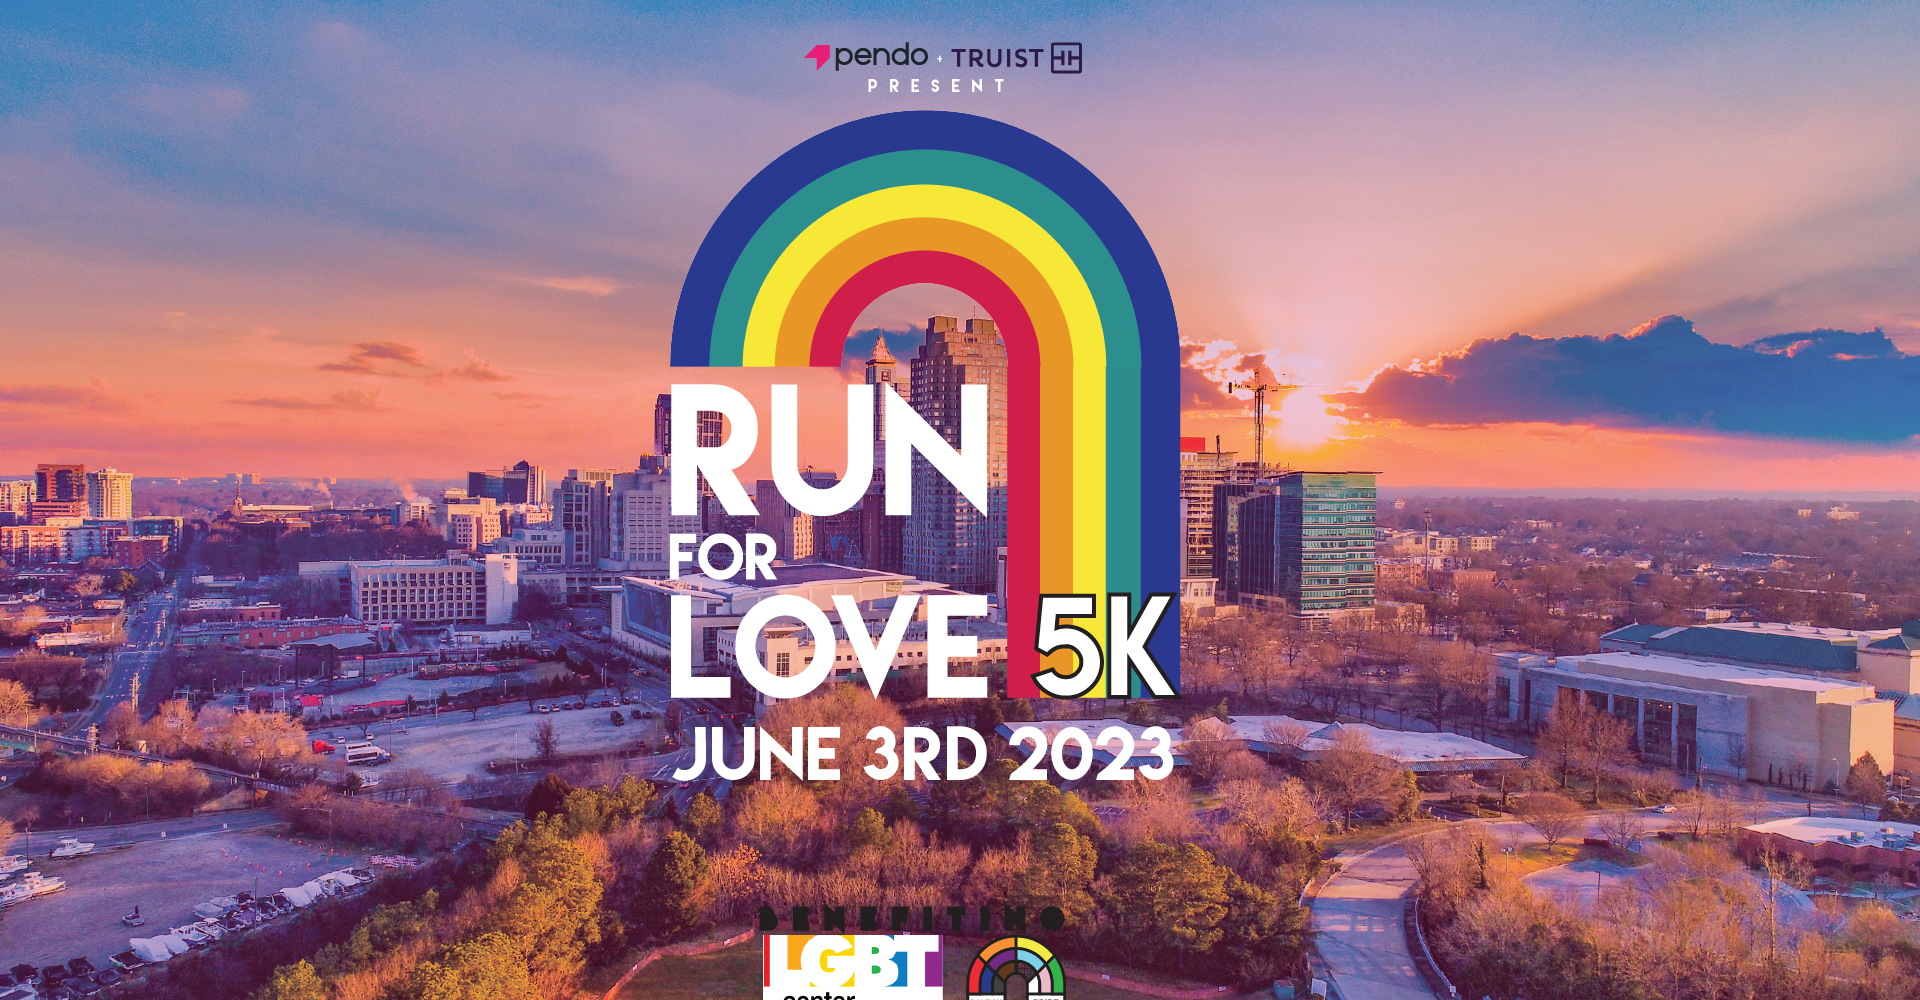 Run for Love 5k | June 3rd 2023